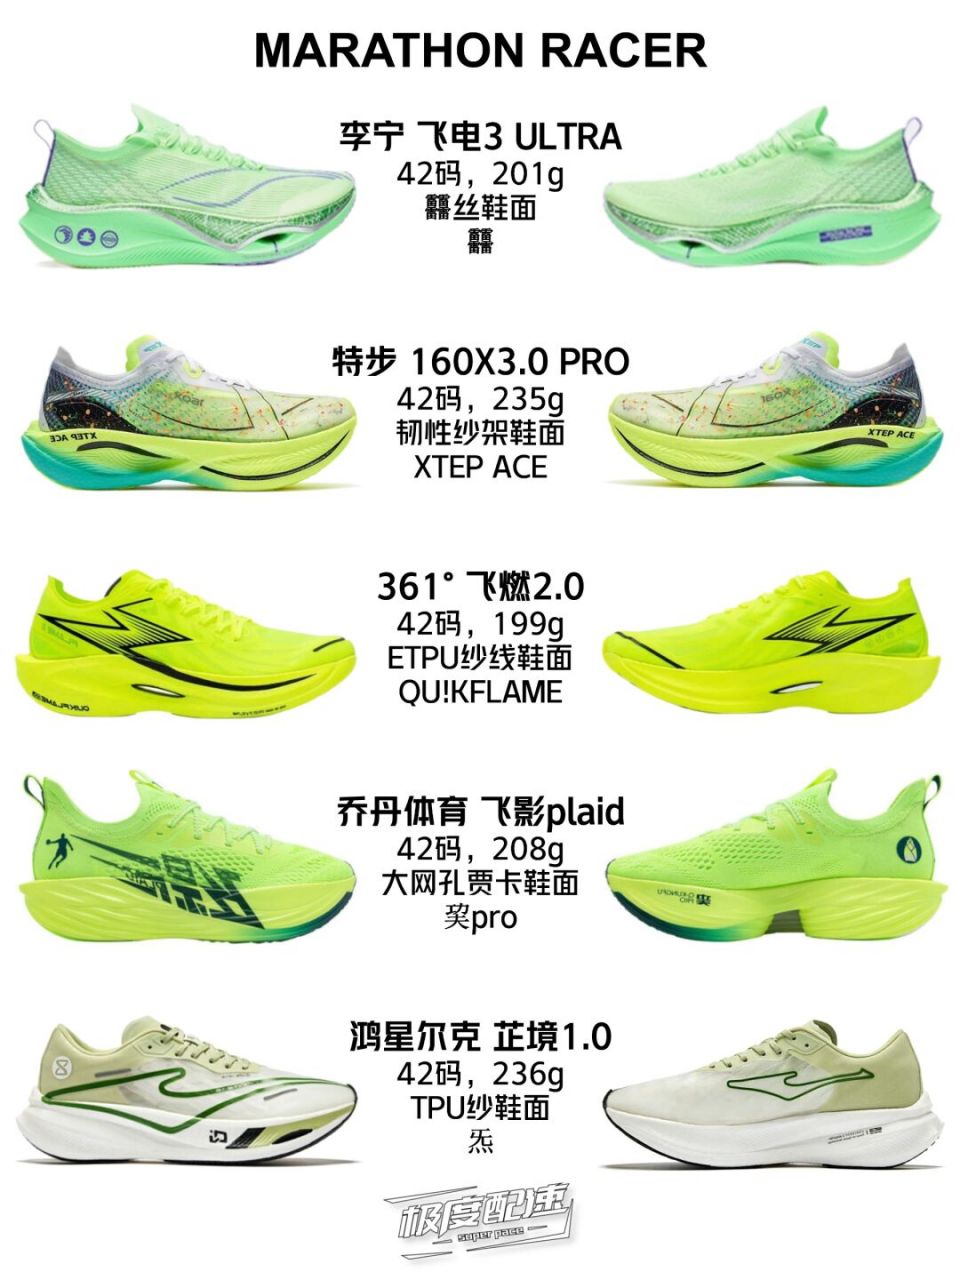 部分国产顶级碳板跑鞋数据对比 李宁 飞电3 ultra: 42丝科技鞋面